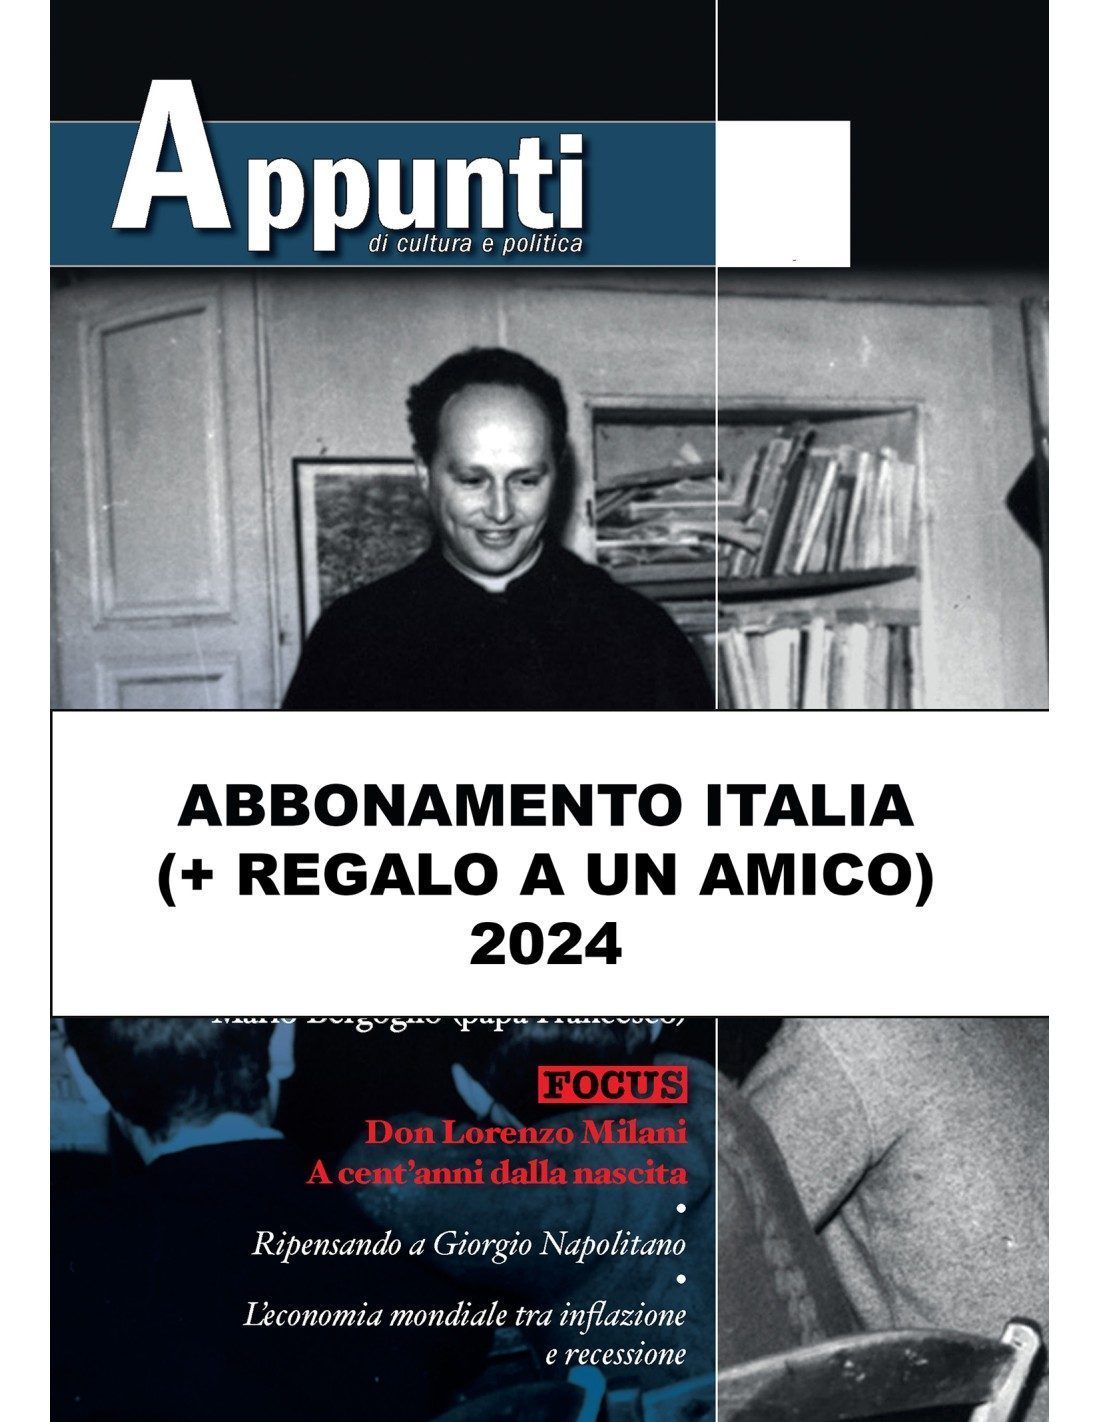 APPUNTI Abbonamento Italia + REGALO ad un amico 2024 - Editrice Morcelliana